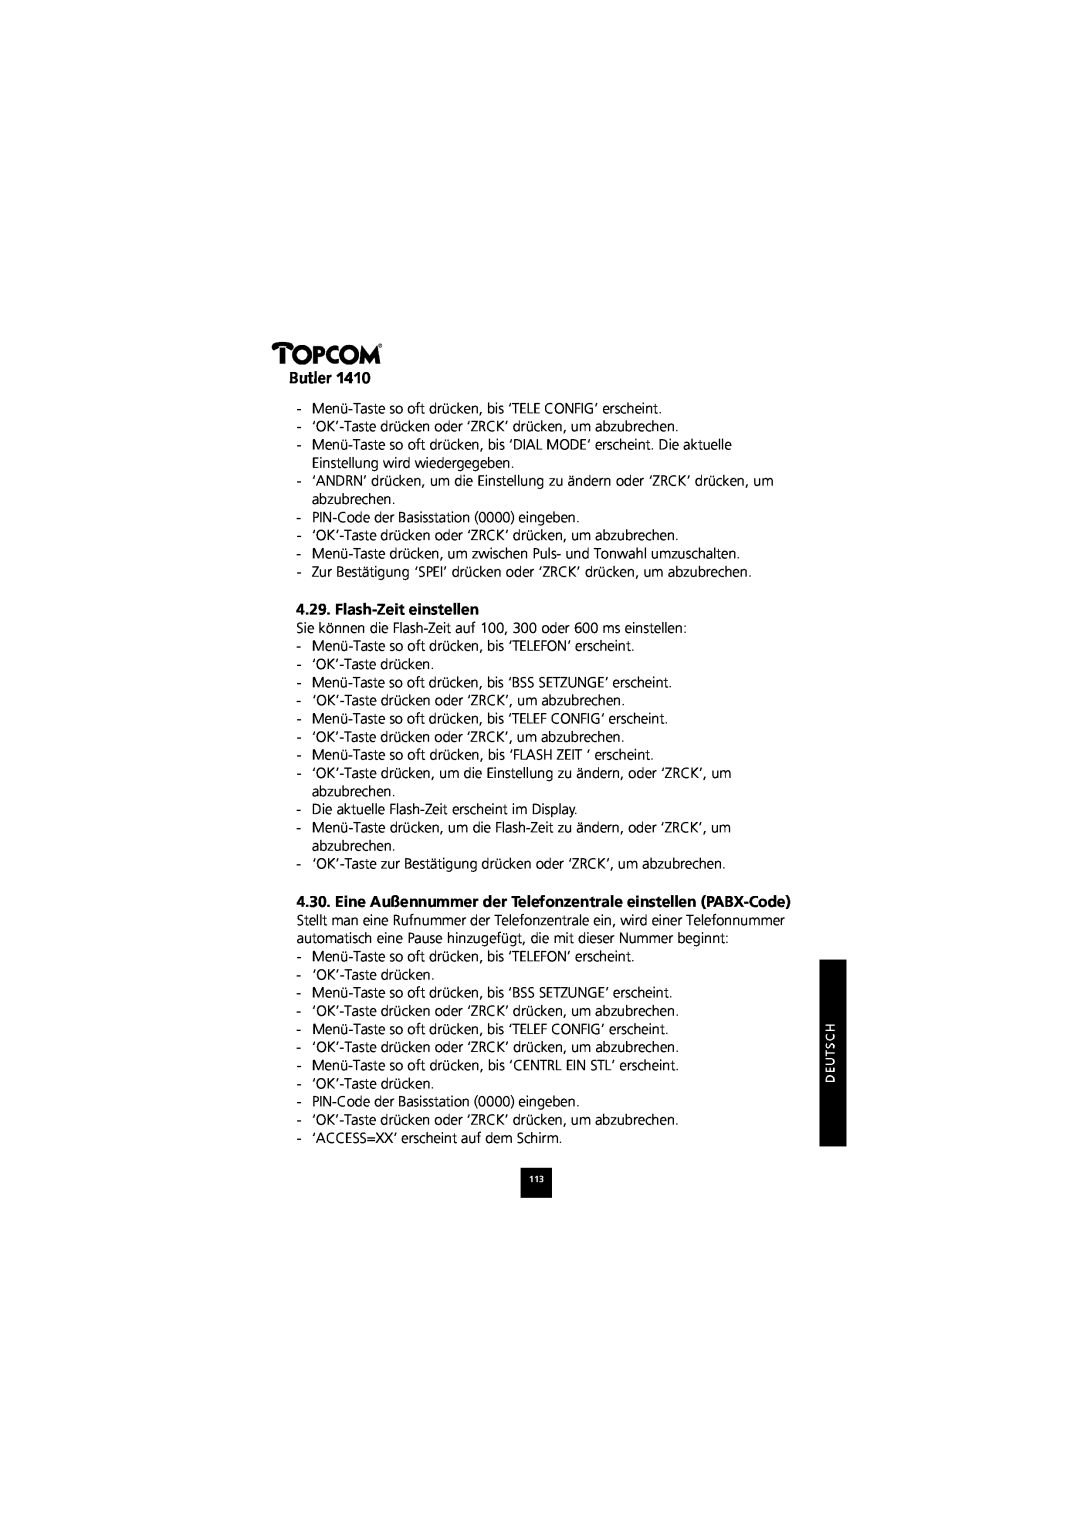 Topcom 1410 manual Flash-Zeit einstellen, Butler 